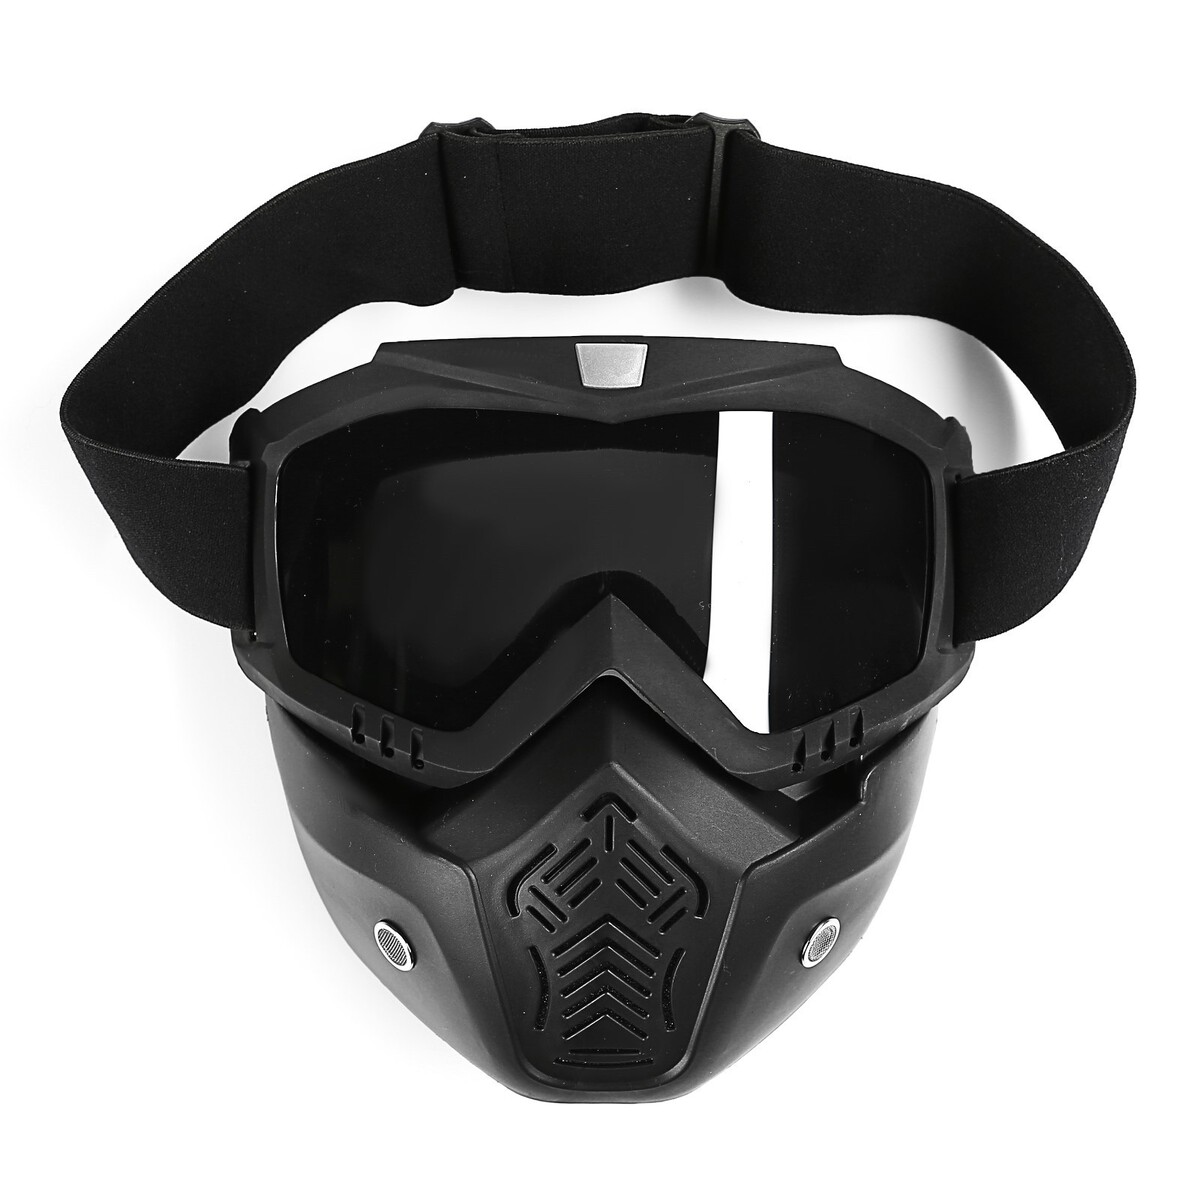 Очки-маска для езды на мототехнике, разборные, стекло с затемнением, черные очки маска со съемной защитой носа стекло прозрачное черные